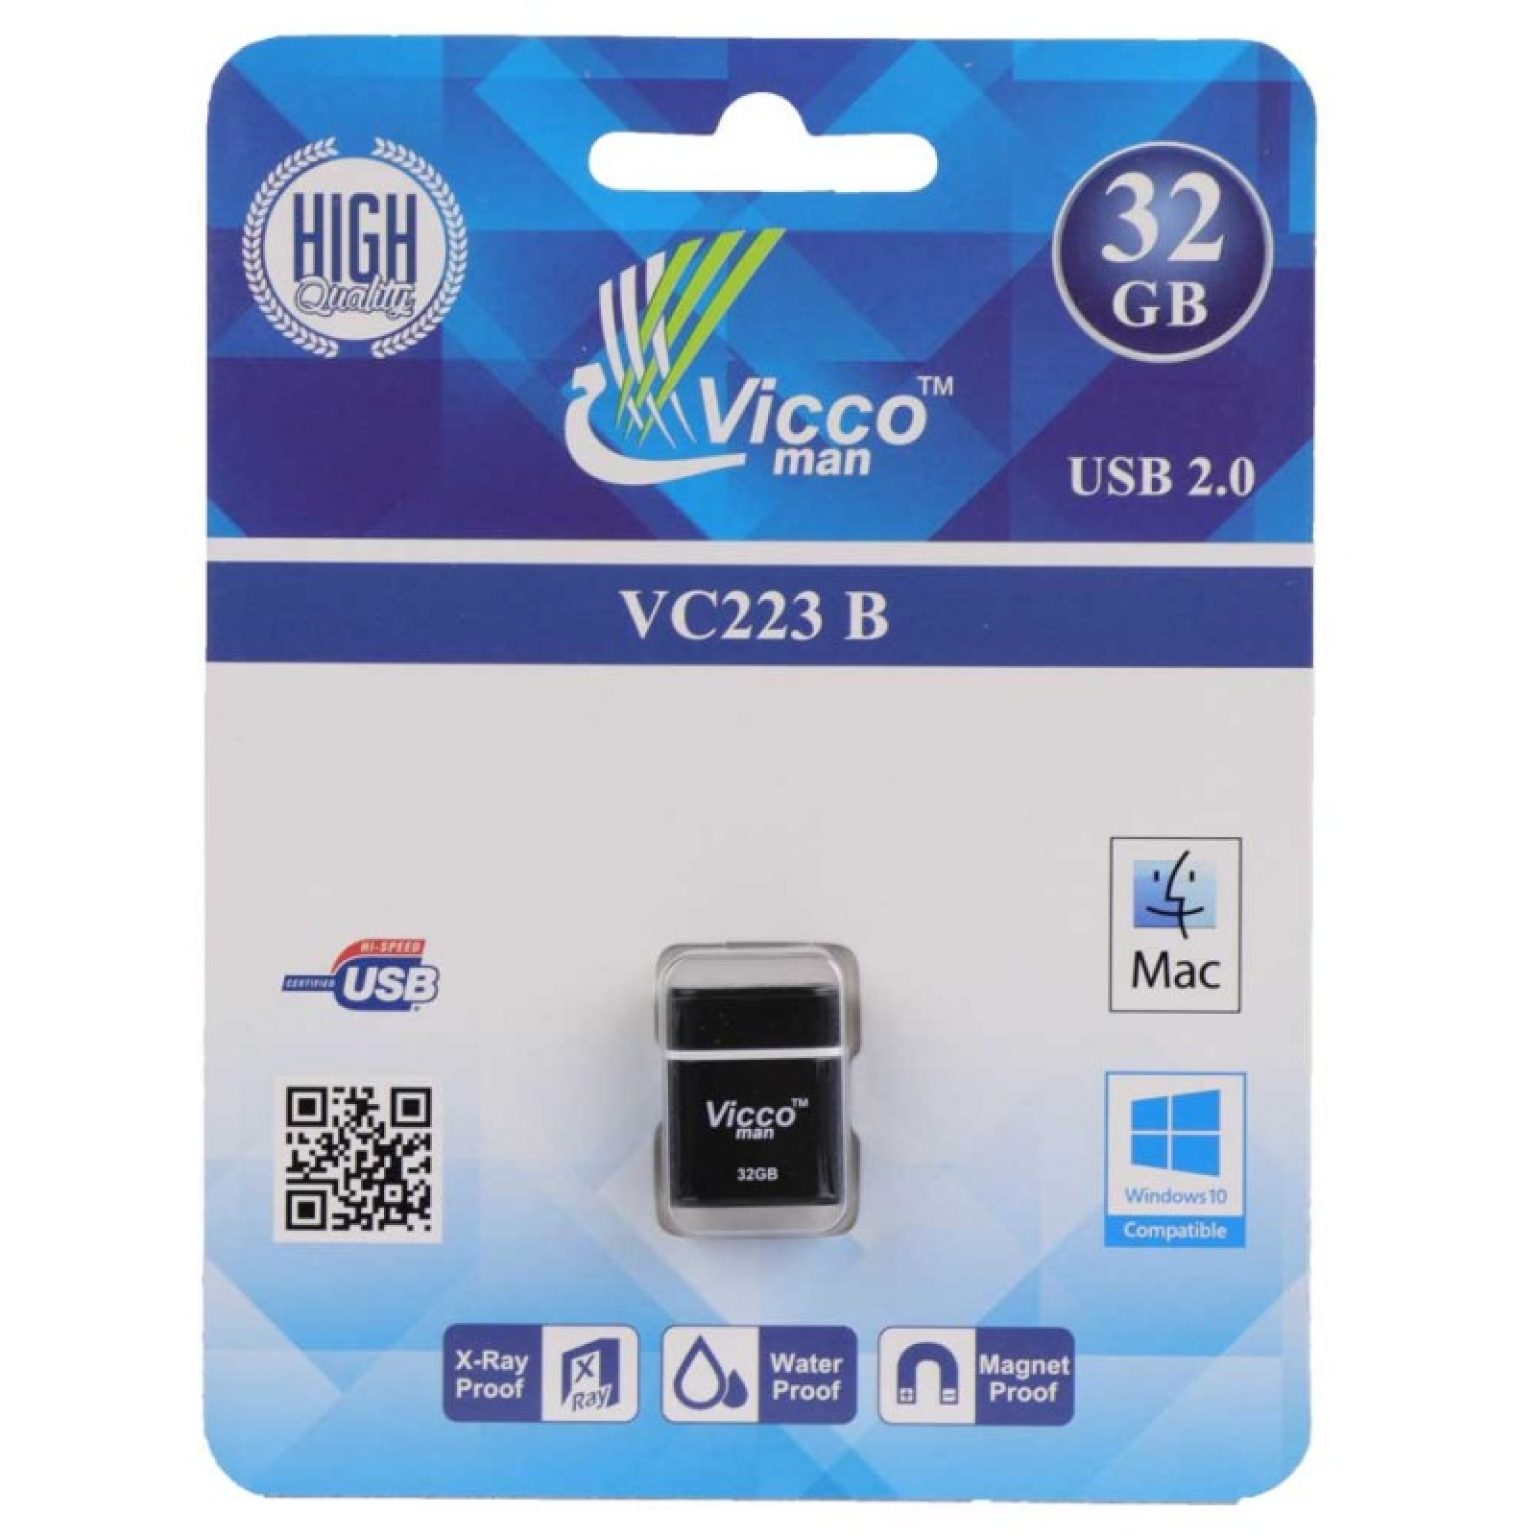 Vicco man VC223 B 32GB فلش 32 گیگ 800x800 1